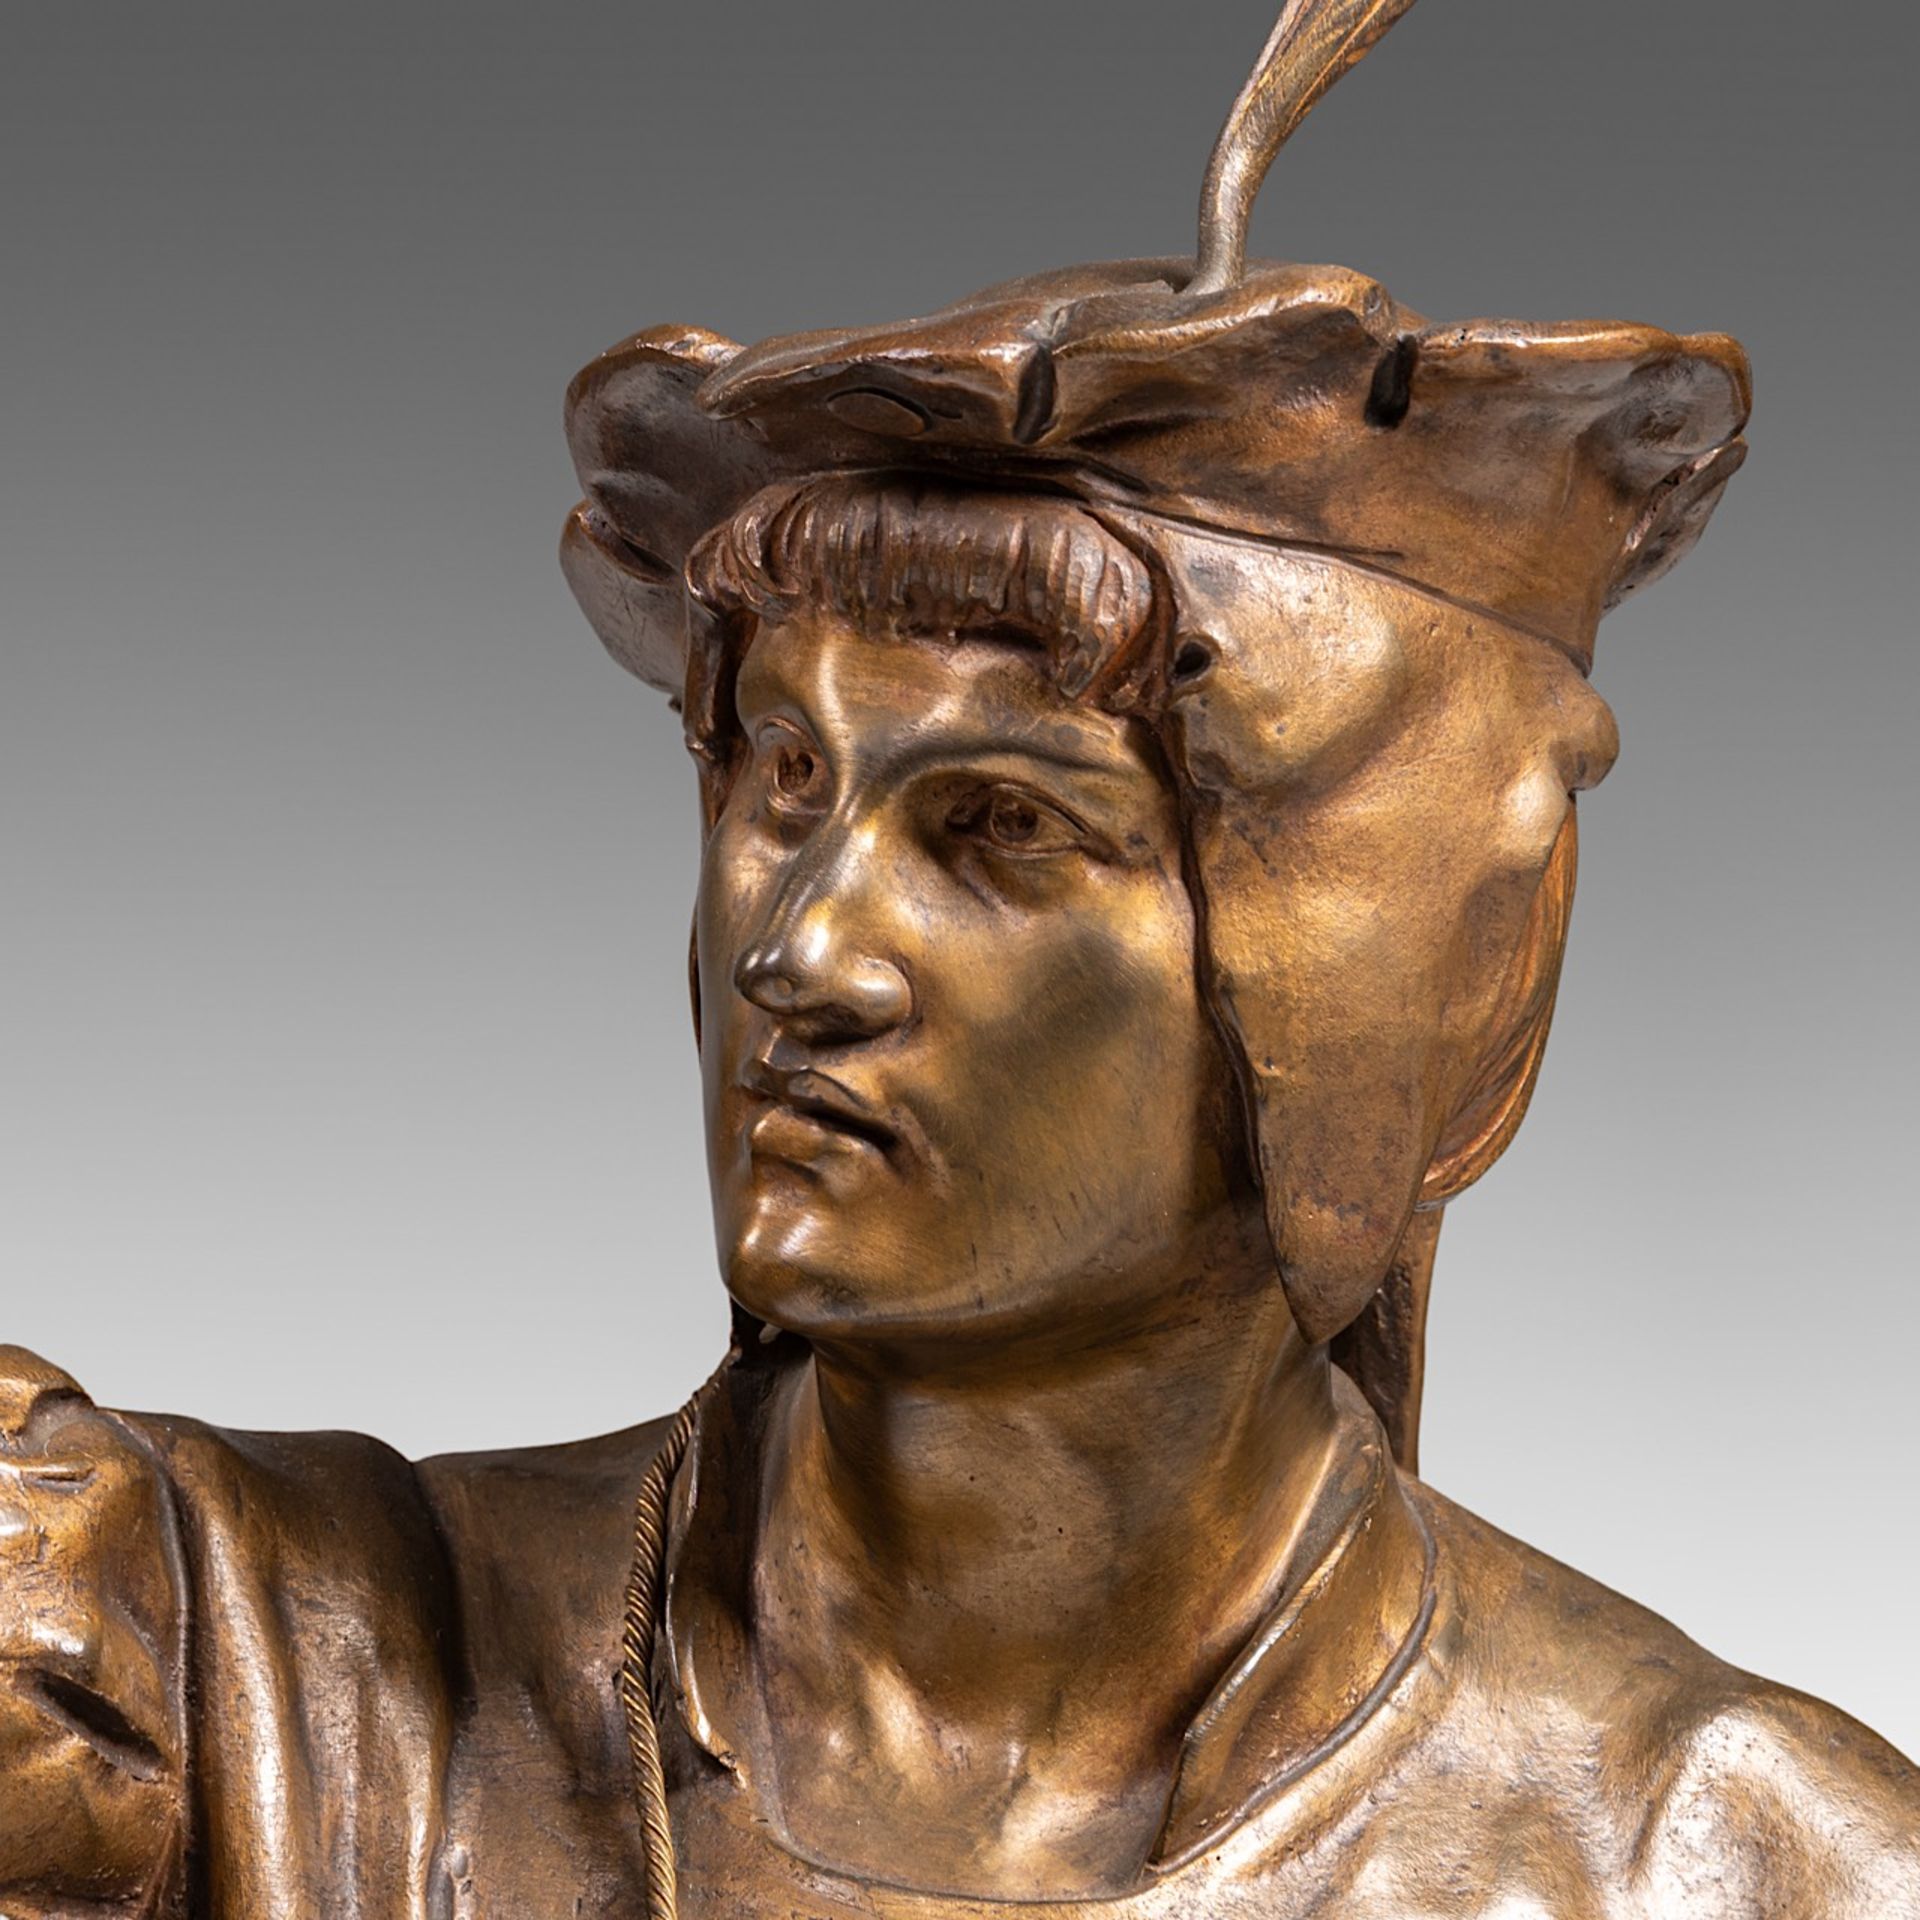 Emile Louis Picault (1833-1915), 'Le Fauconnier', patinated bronze, H 85 cm - Bild 9 aus 10